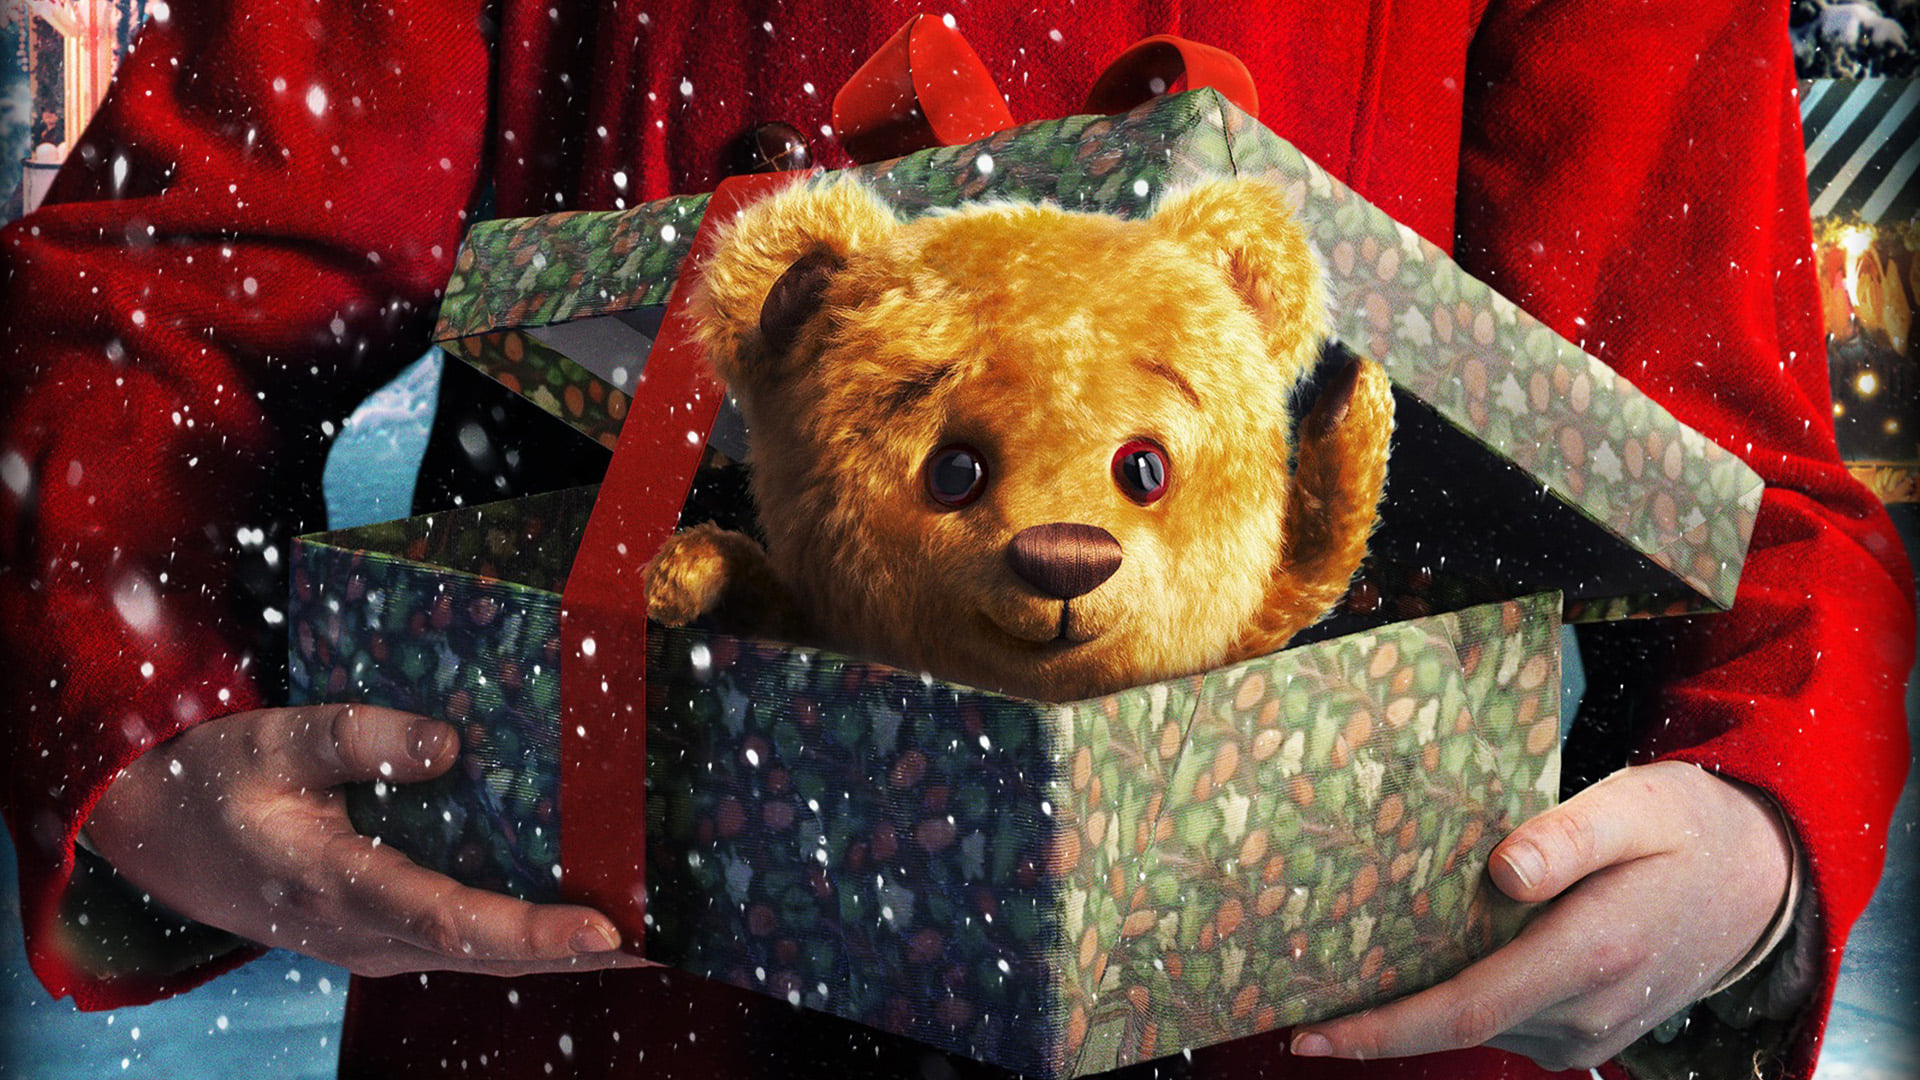 Teddybjørnens Jul